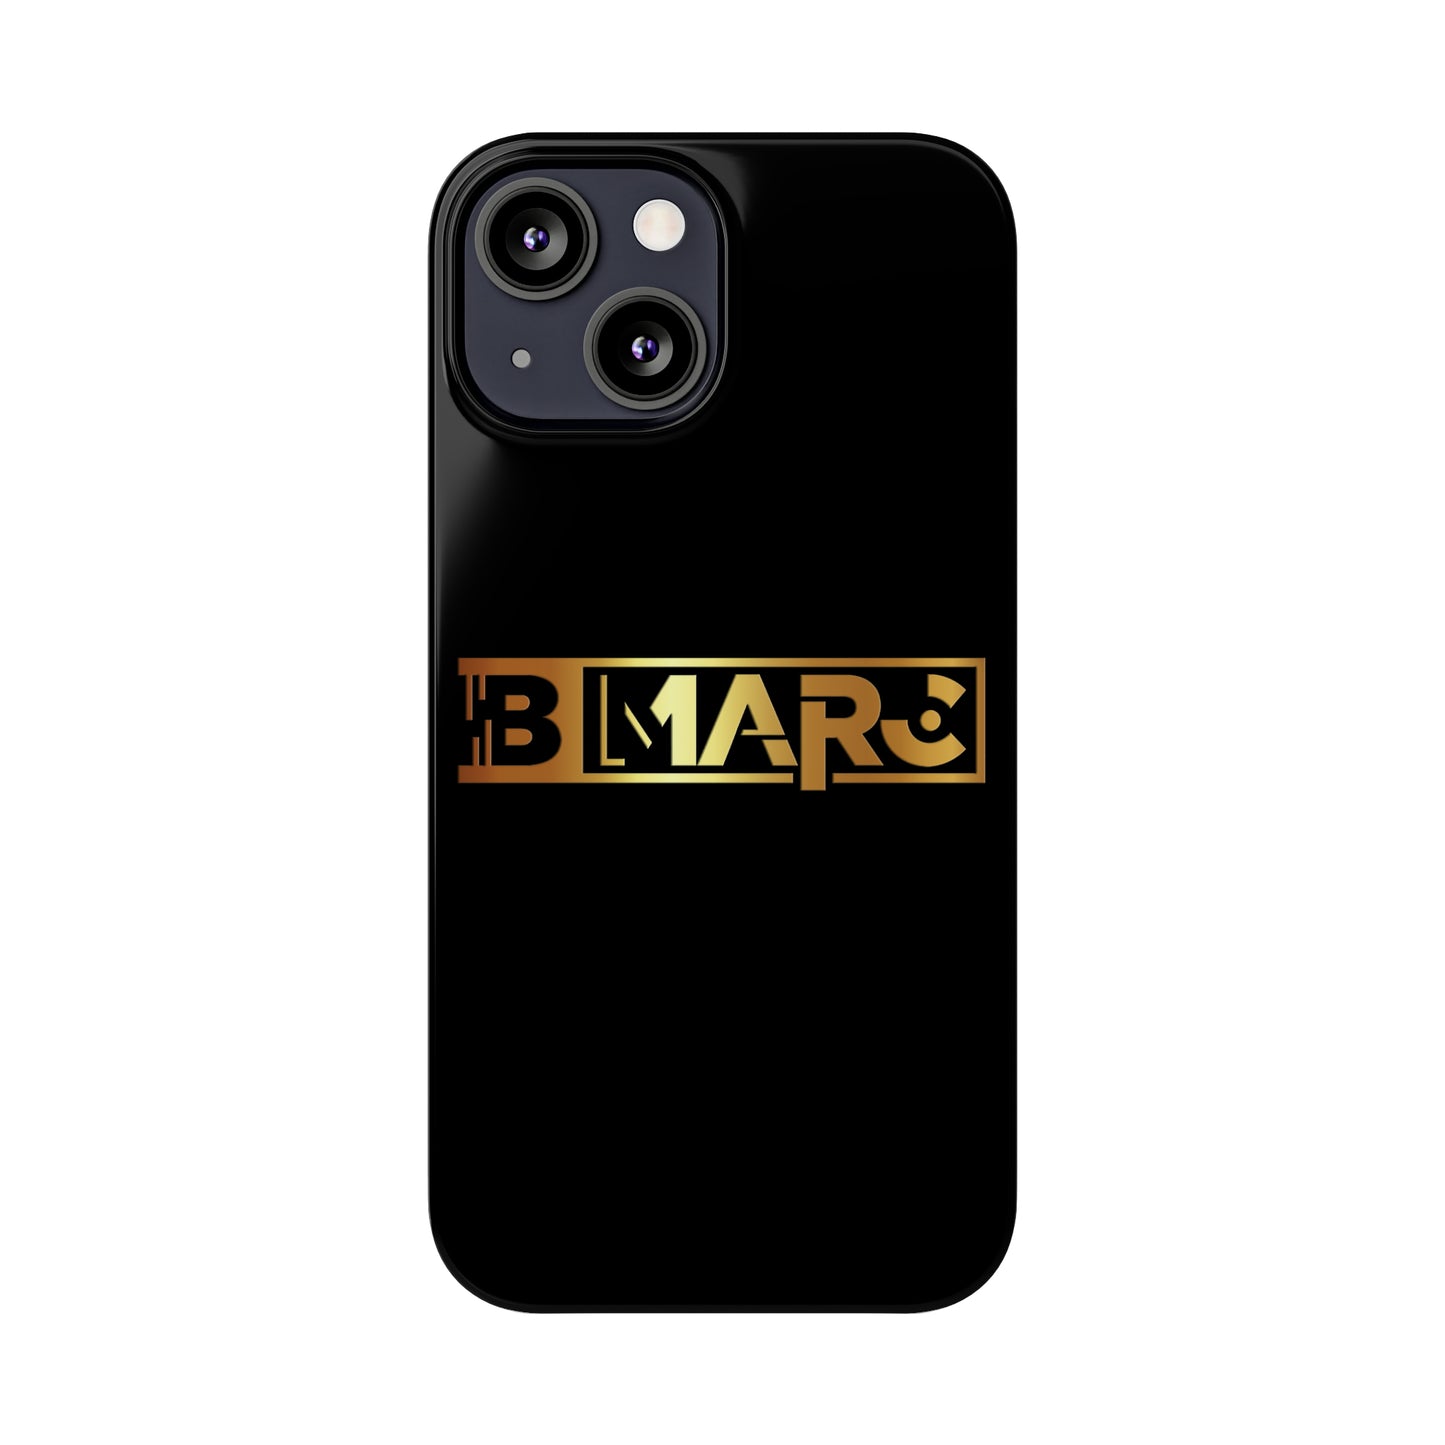 B-MARC Phone Cases